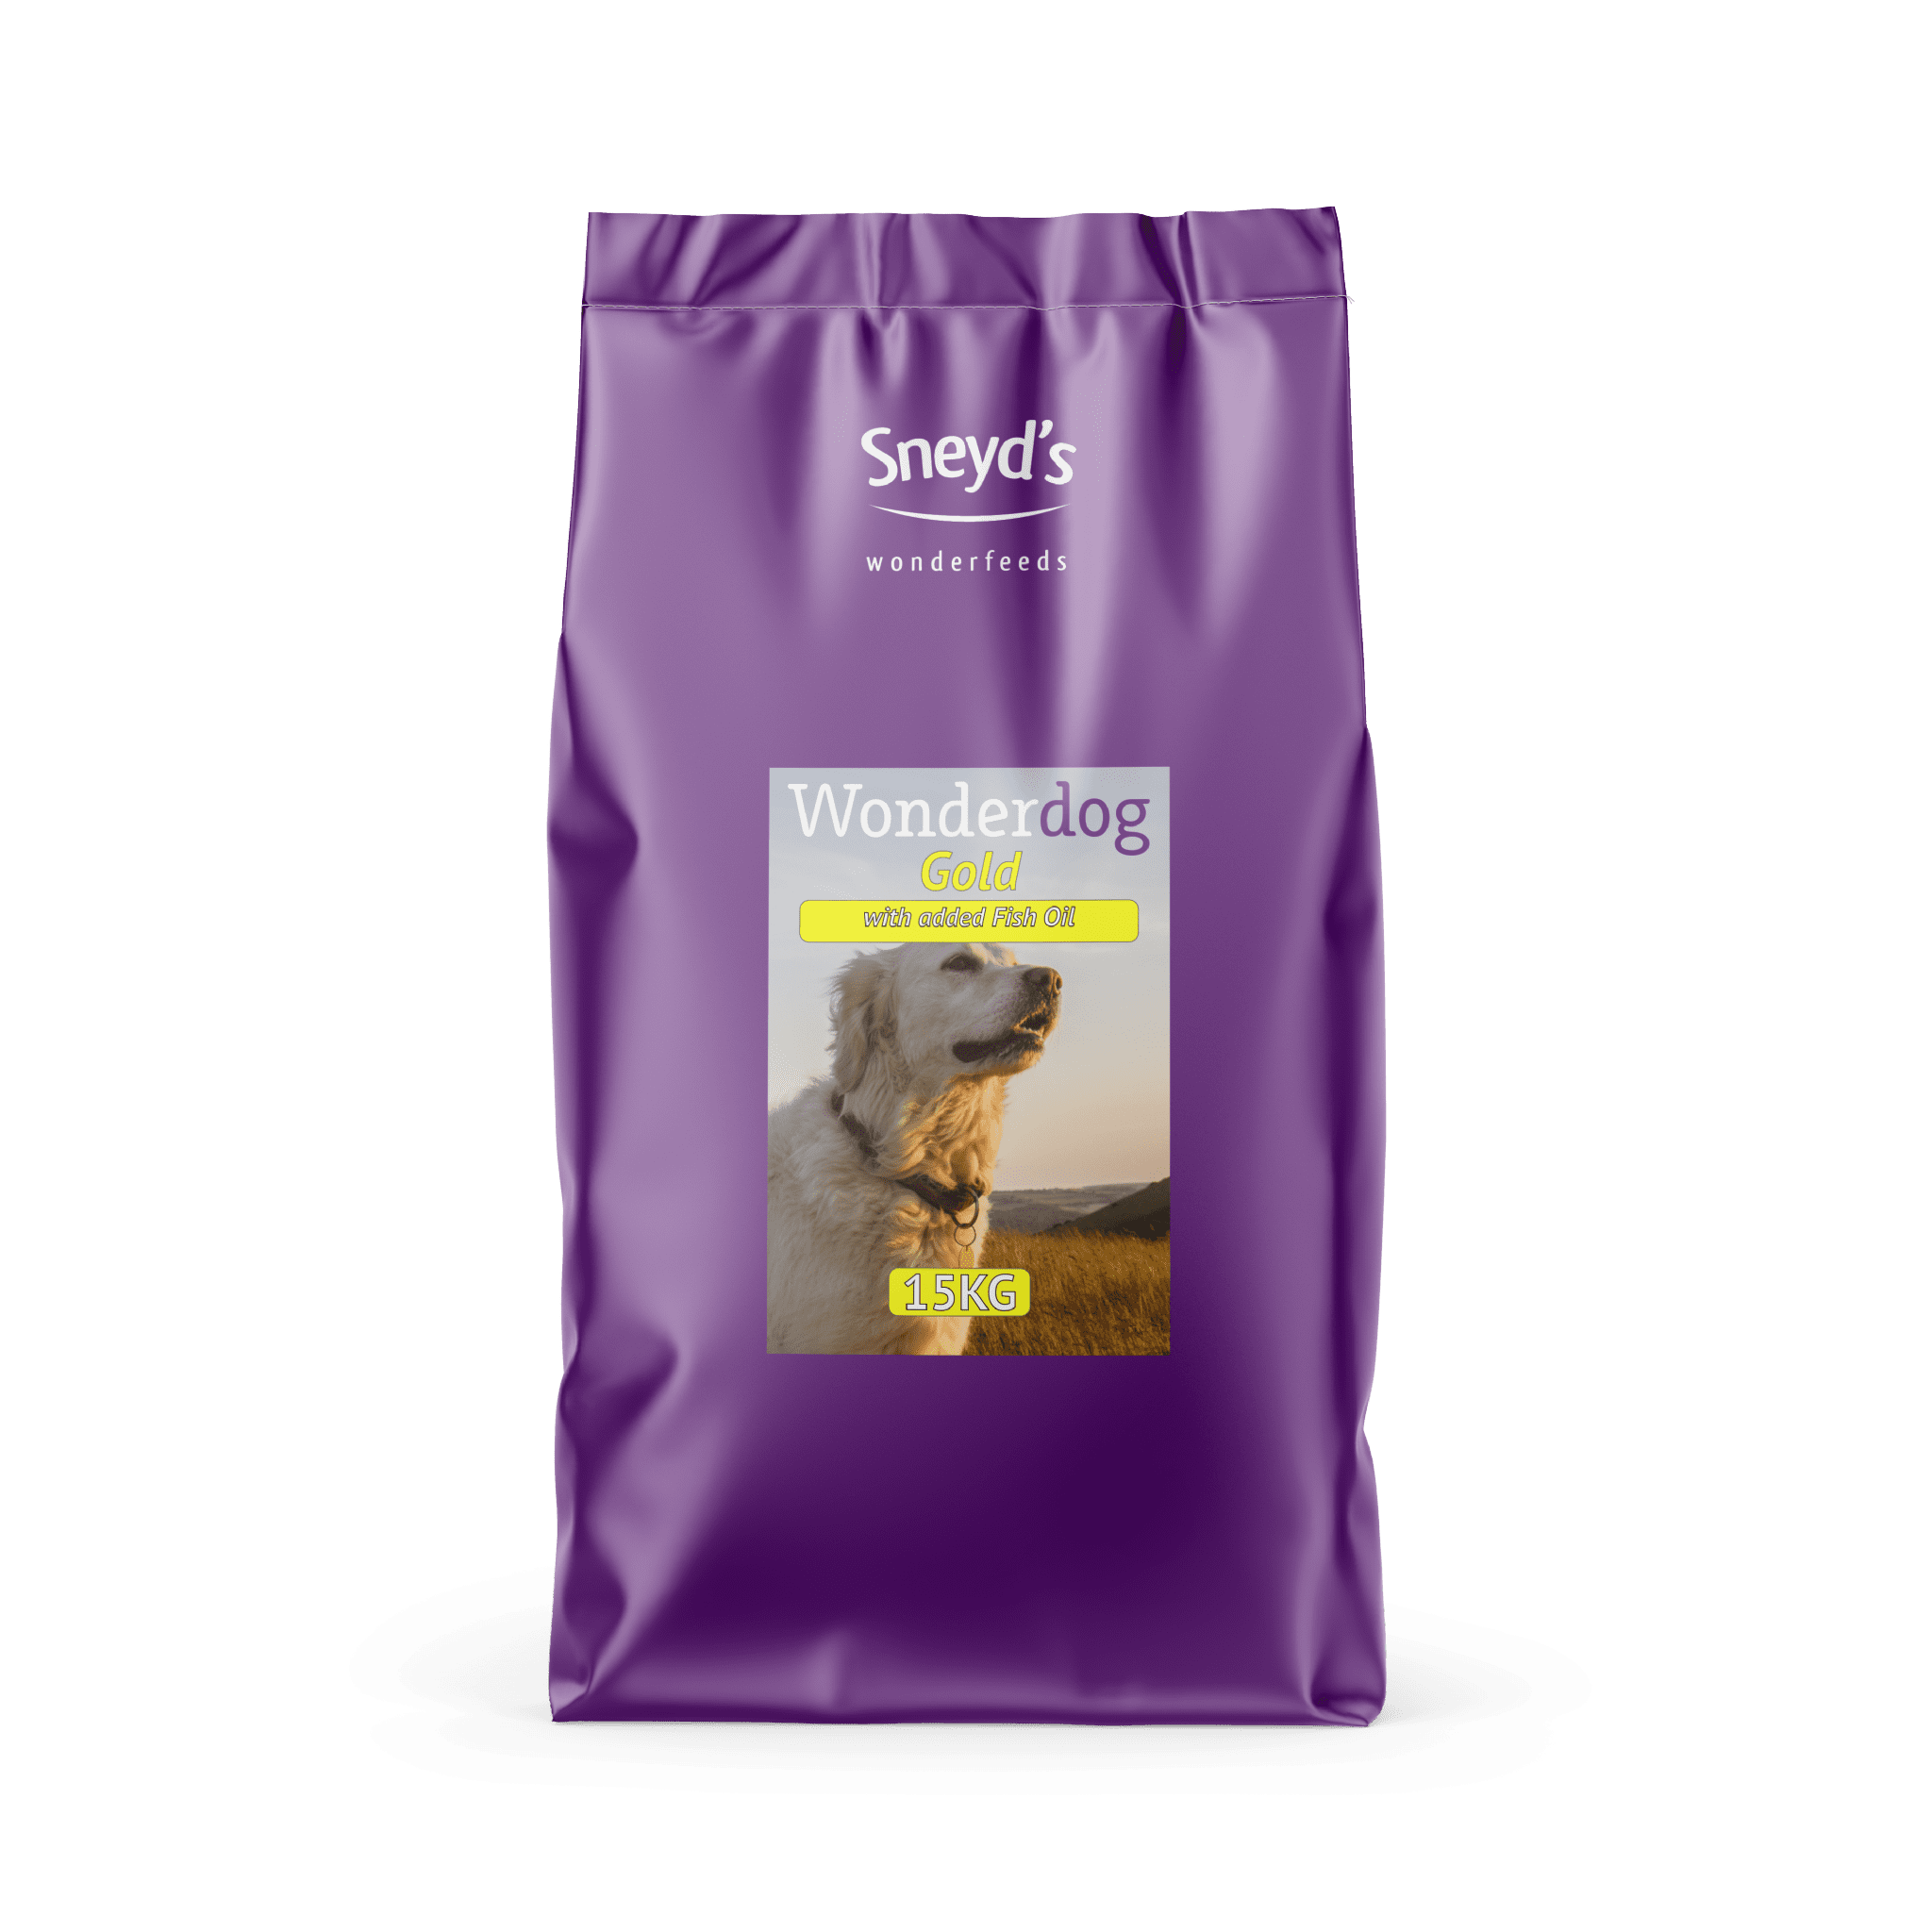 Sneyds Wonderdog Gold Dog Food 15kg